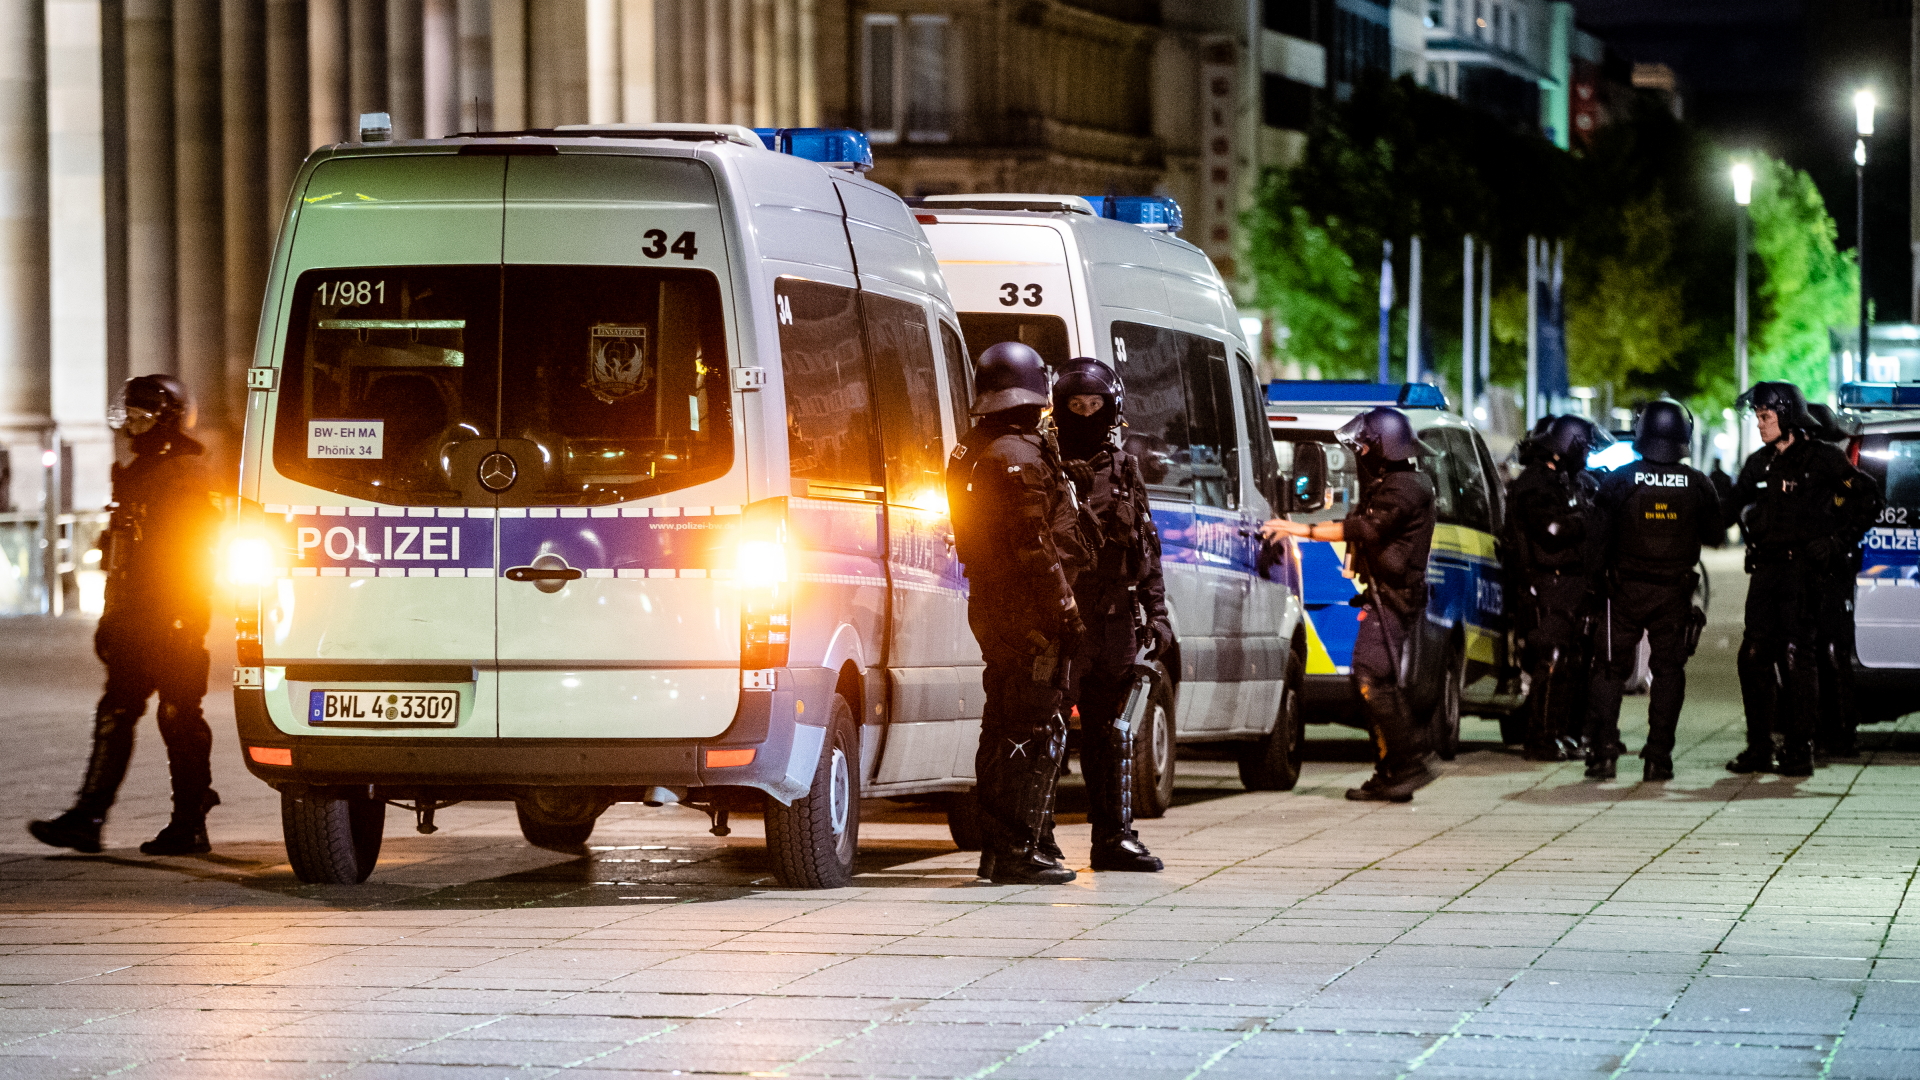 Einheiten der Polizei stehen in der Innenstadt von Stuttgart. | Bildquelle: dpa